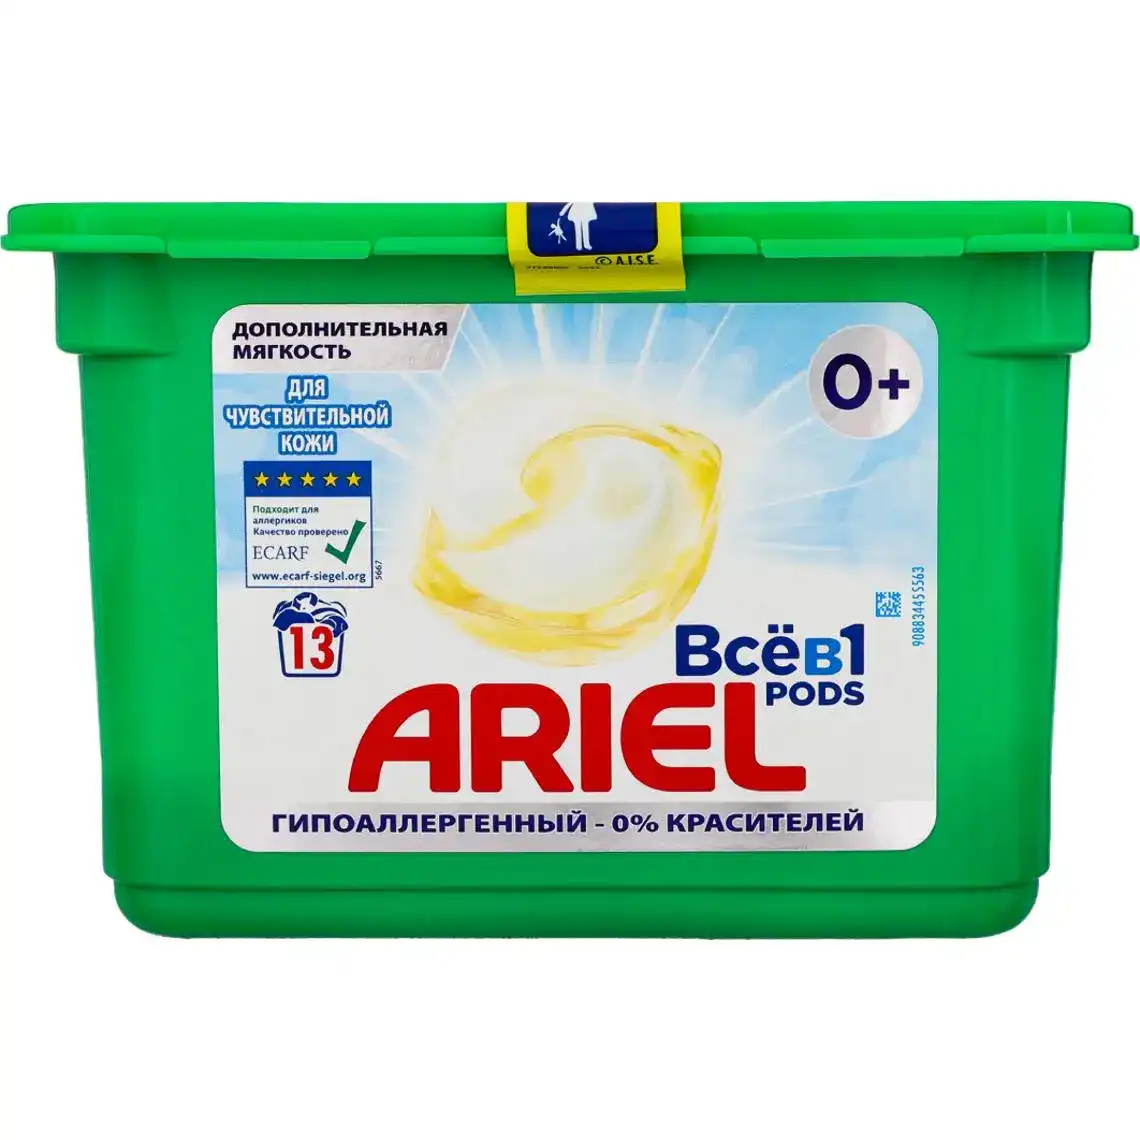 Капсули для прання Ariel Всев1 Pods для чутливої шкіри 13 шт.